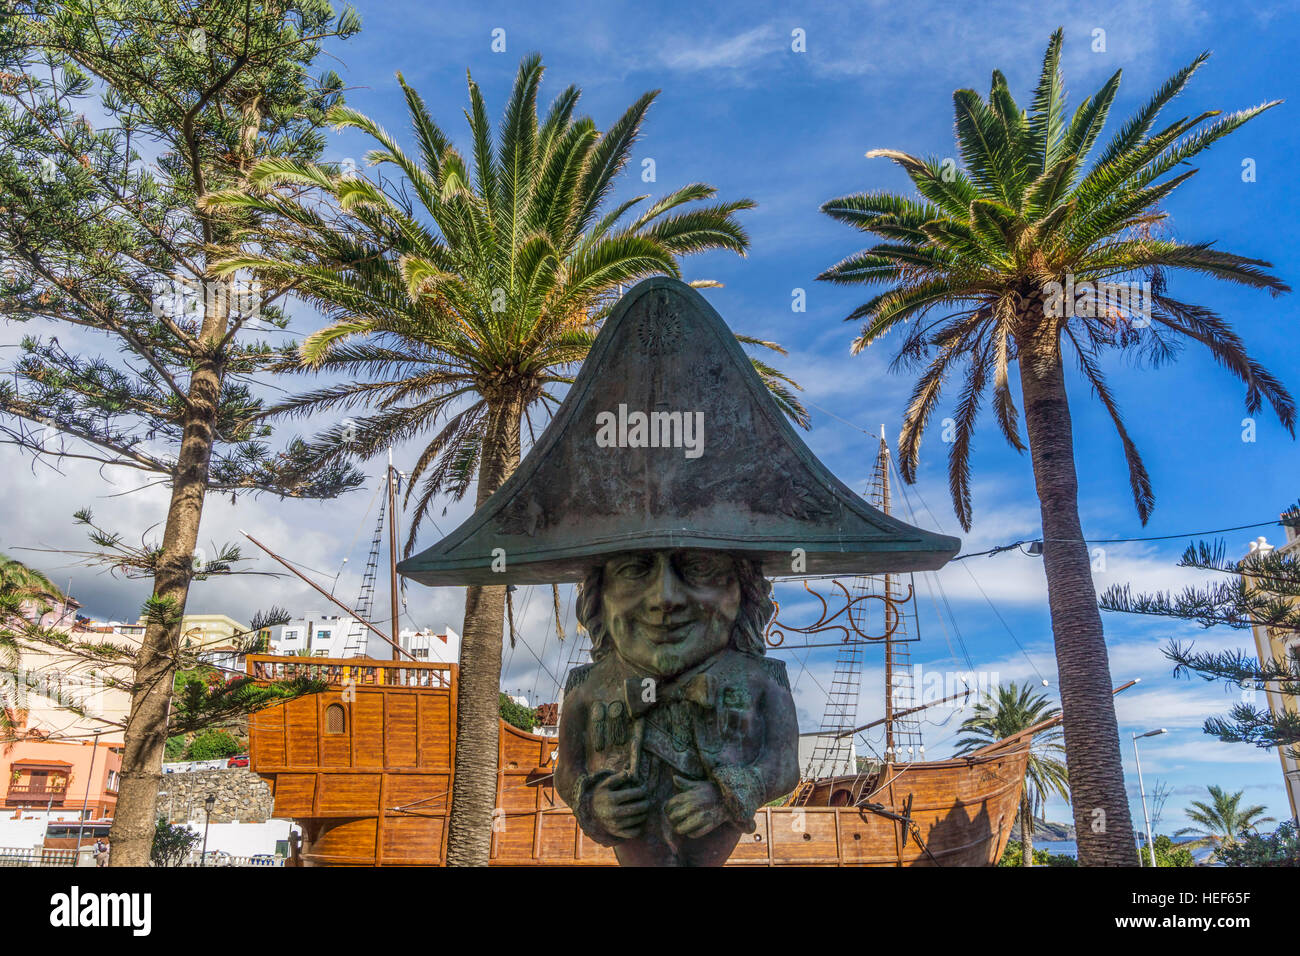 Enano de la Virgen sculpture and Naval Museum.Plaza de la Alameda,Santa Cruz, La Palma, Canary Islands, Spain Stock Photo